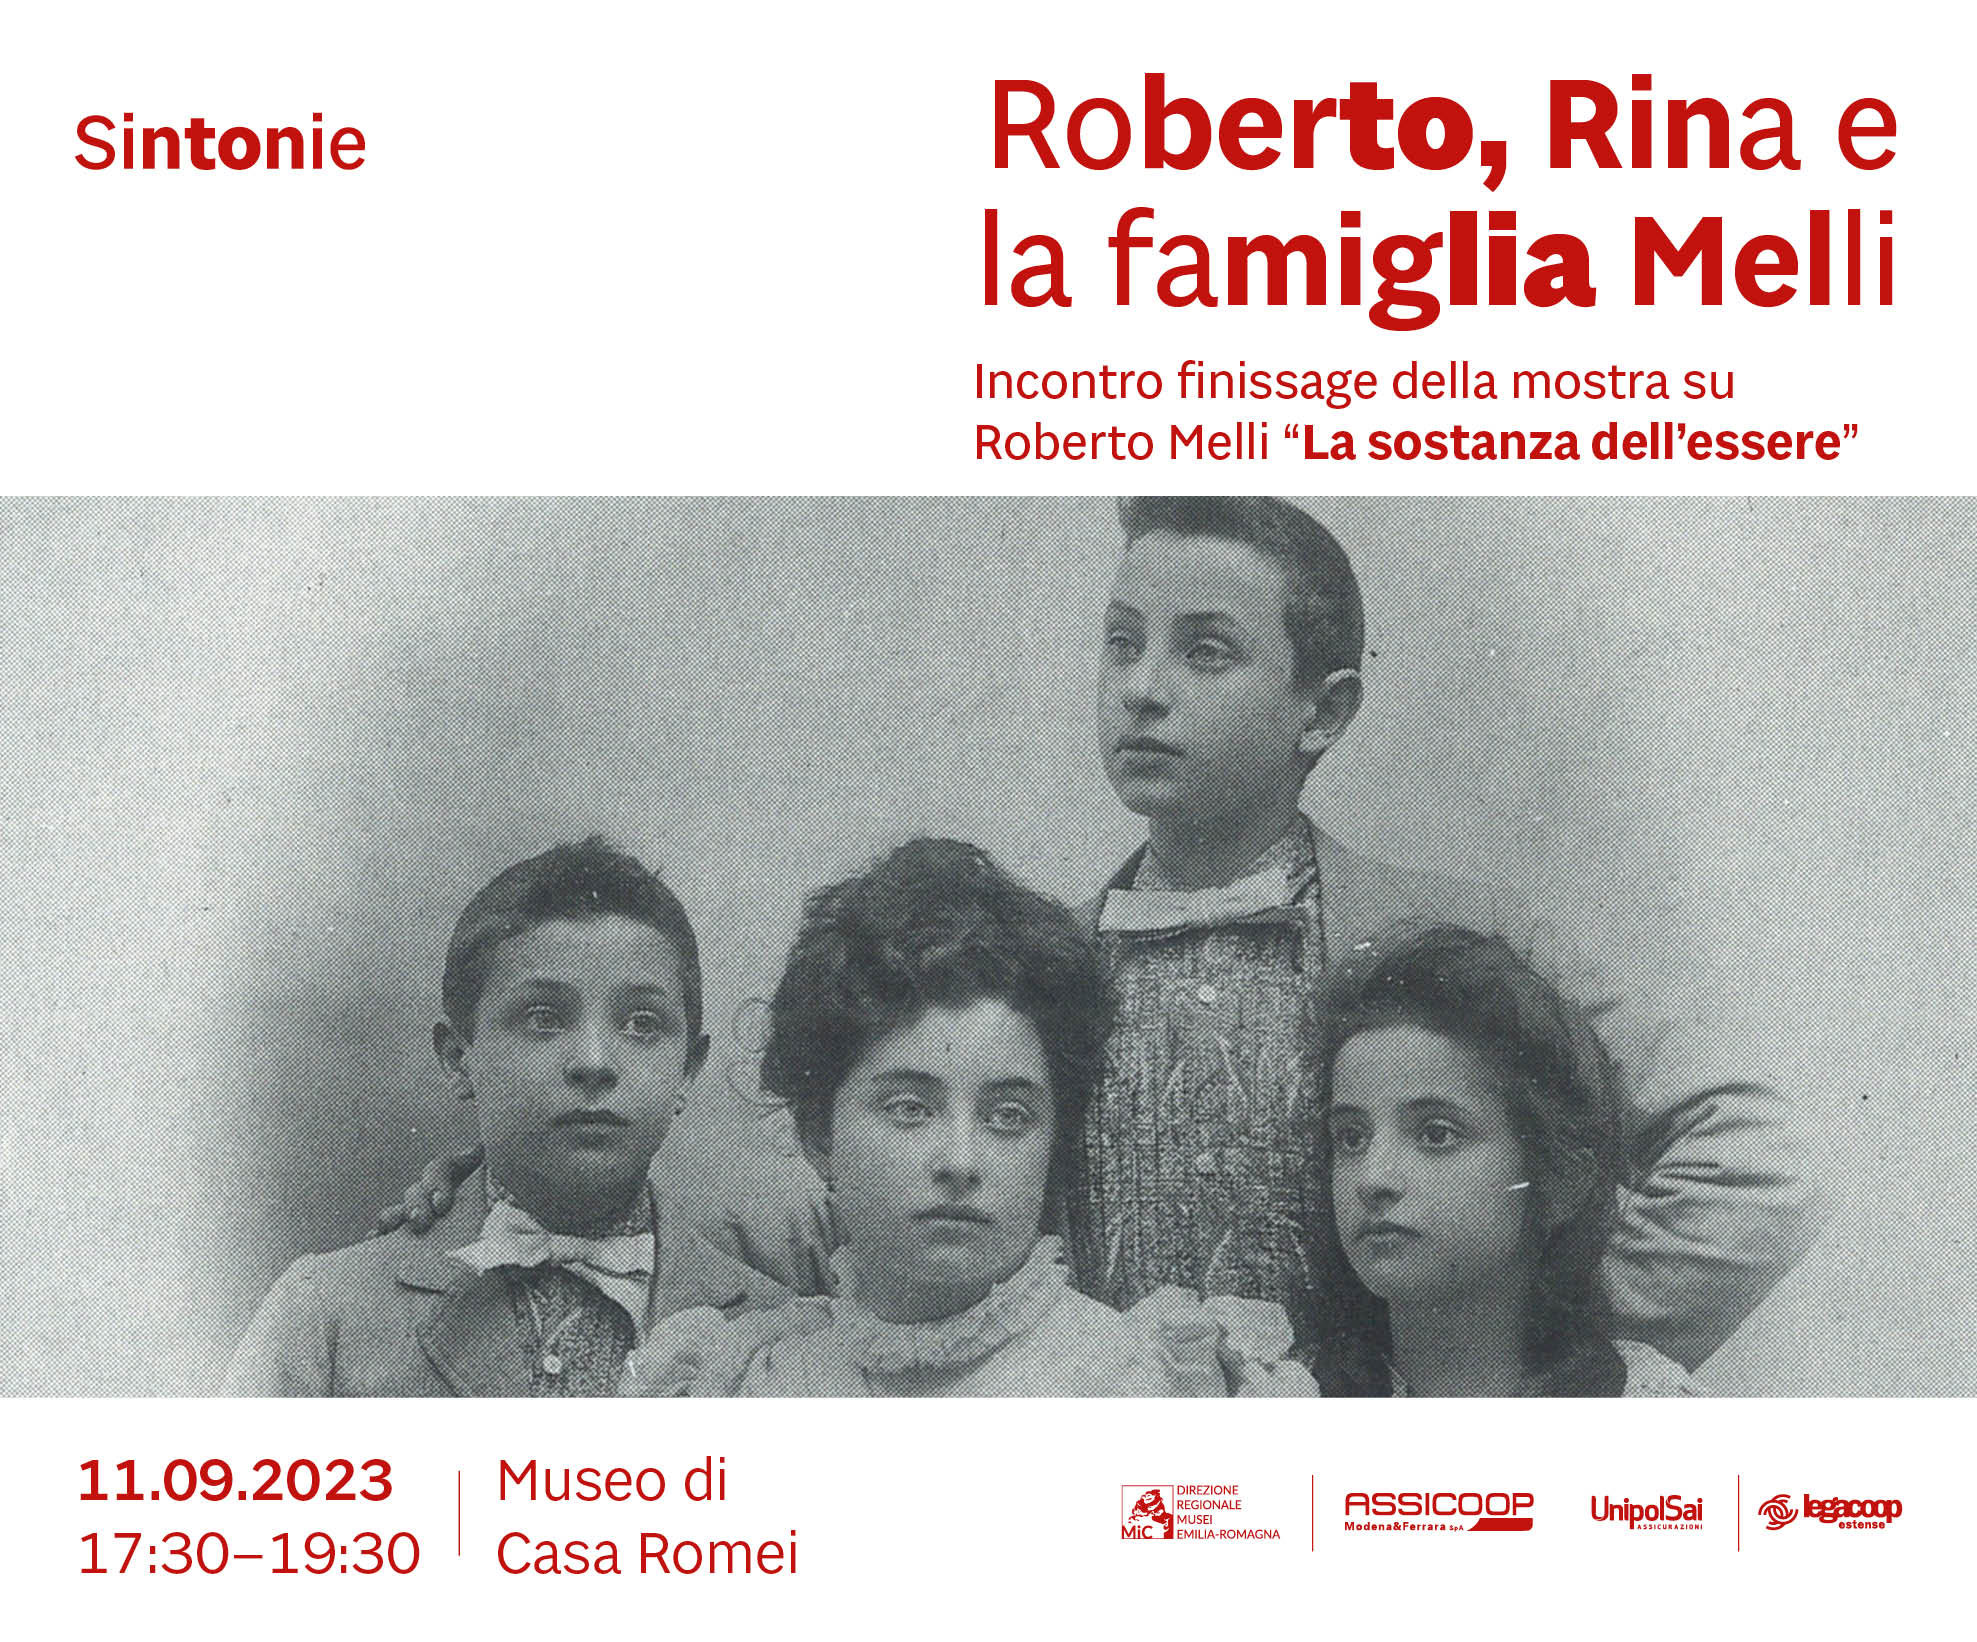 “La sostanza dell’essere”: l’11 settembre il finissage della mostra dossier dedicata a Roberto Melli nell’ambito di Sintonie